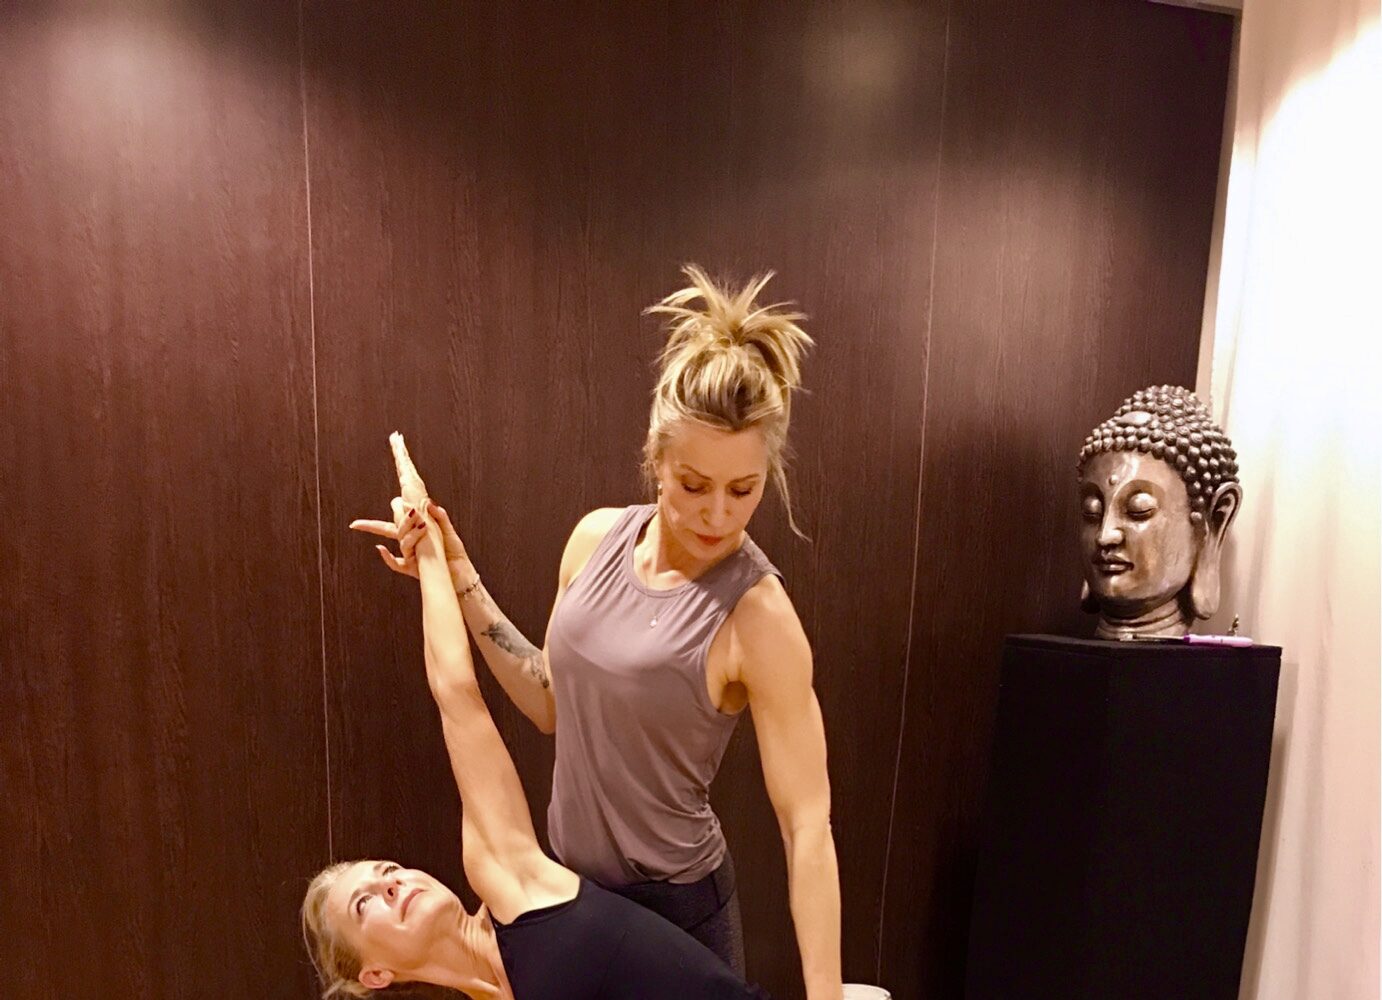 Yoga strafft meinen Körper und Geist